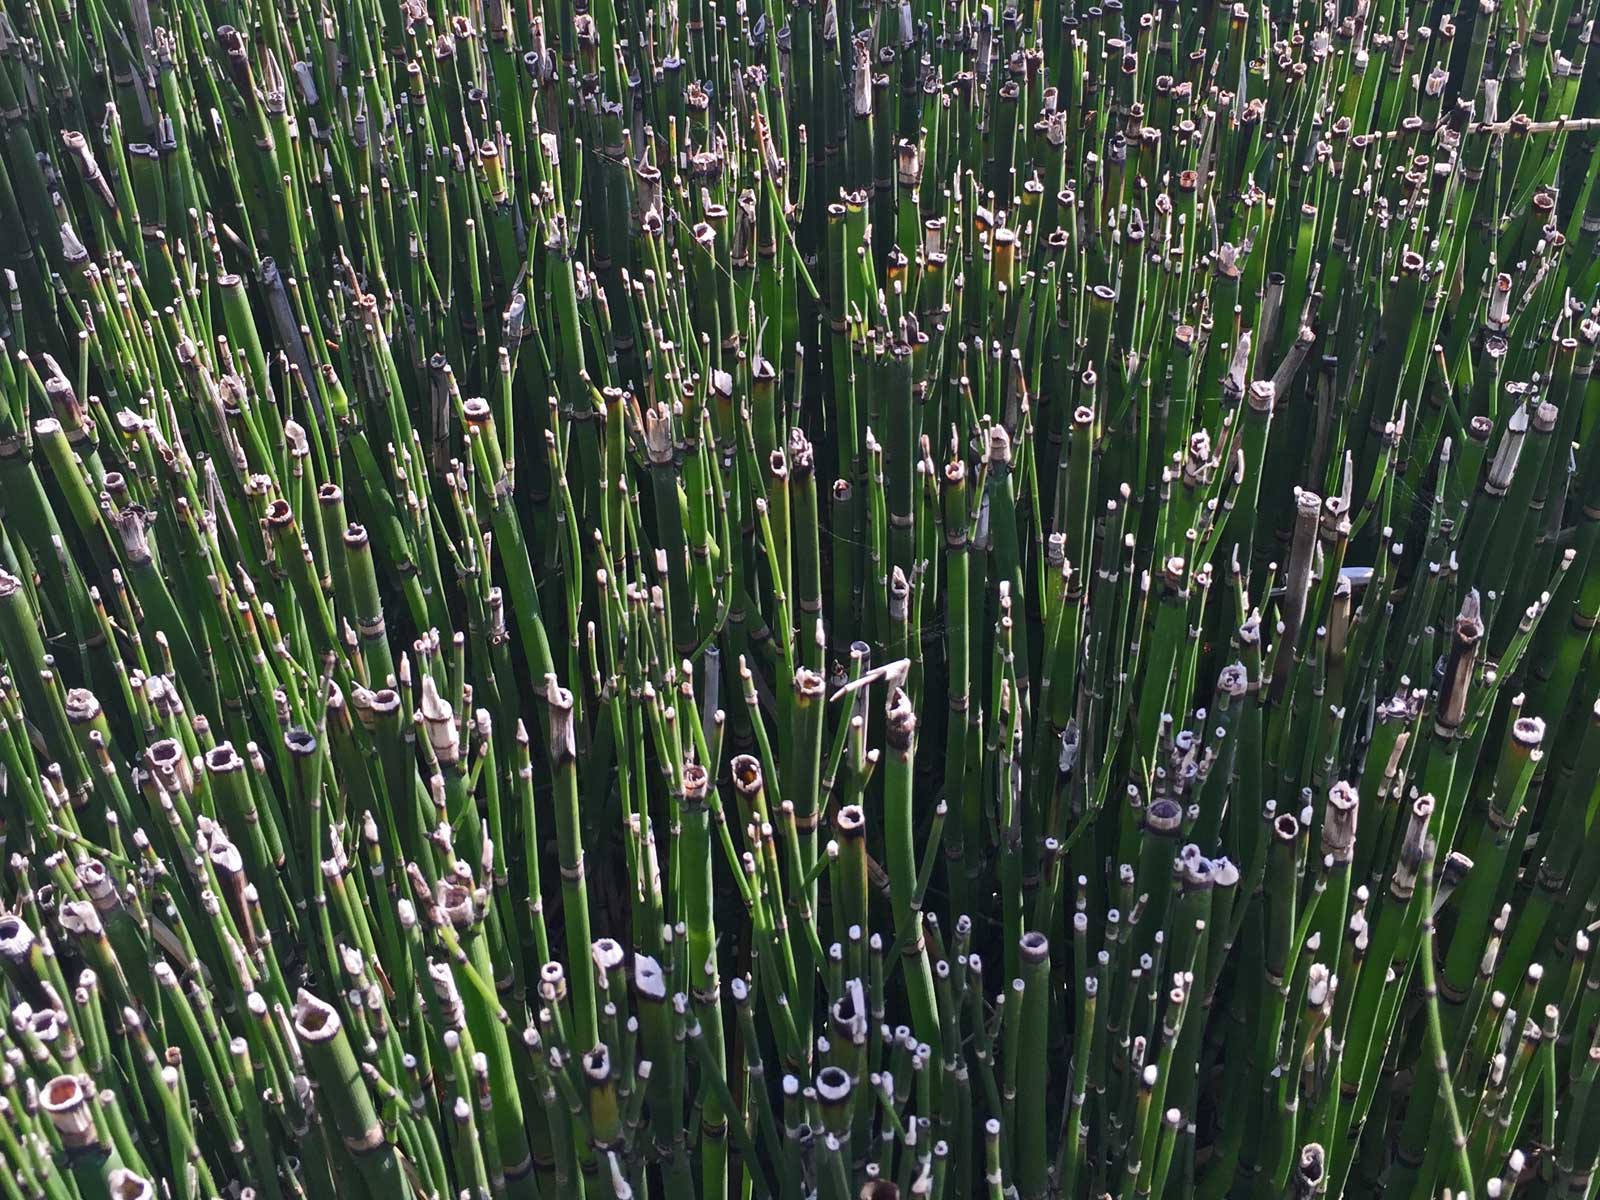 horsetail reed - equisetum hyemale